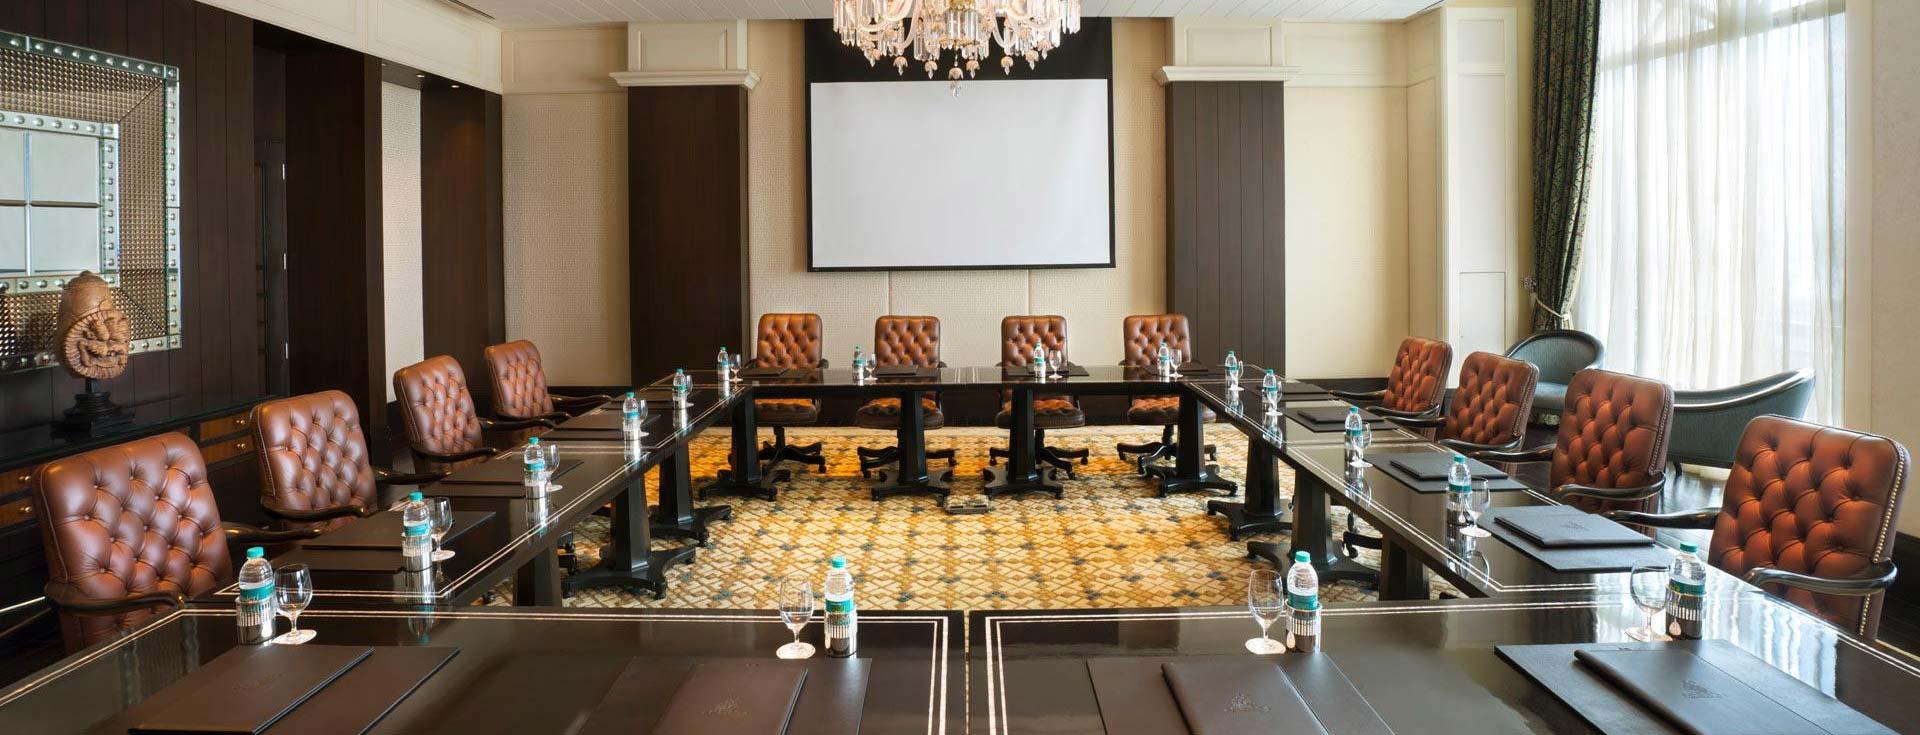 Meetings at Chennai hotels